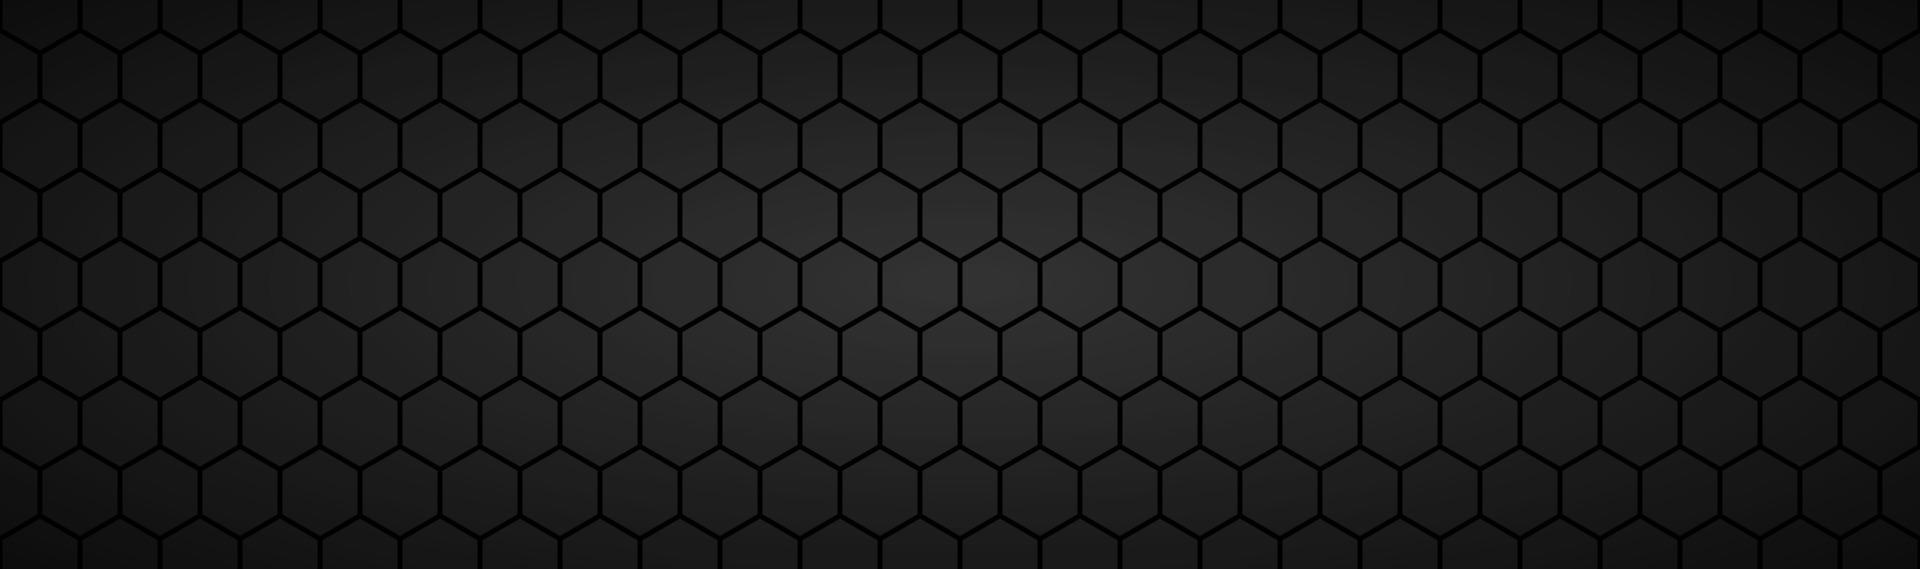 astratto nero scuro geometrico maglia esagonale materiale intestazione tecnologia metallica banner con spazio vuoto per il tuo logo vettore astratto sfondo widescreen